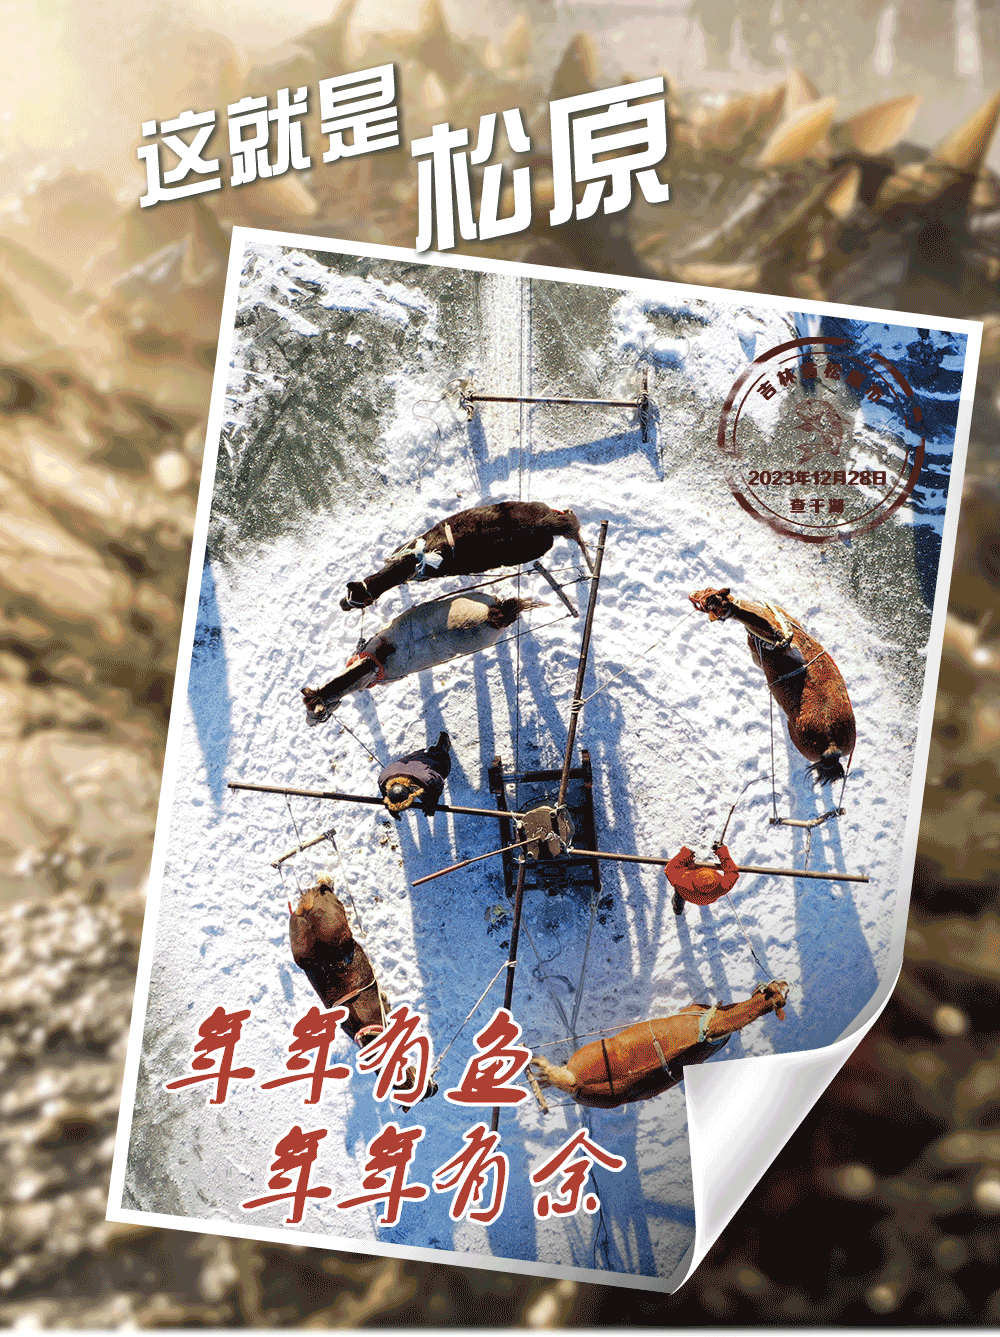 來自查幹湖的明信片，邀您共賞“冰湖騰魚”